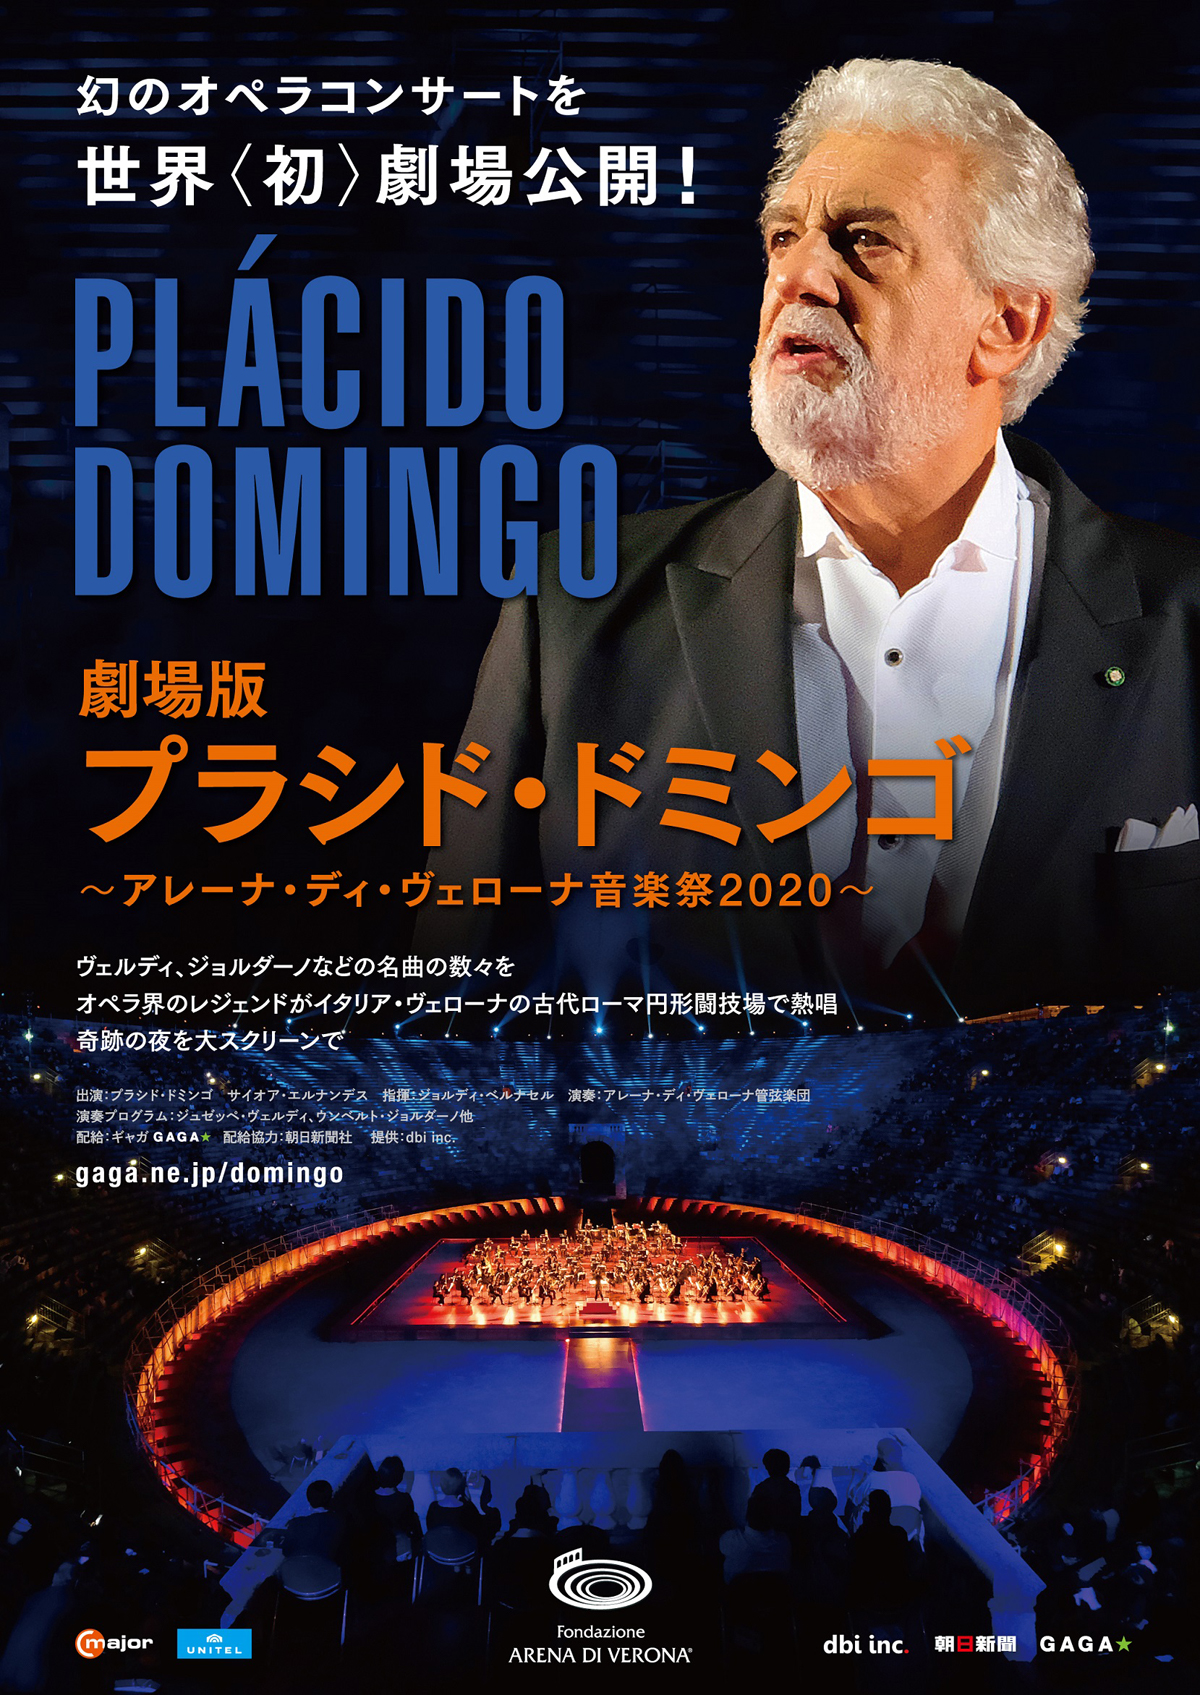 劇場版プラシド・ドミンゴ ～アレーナ・ディ・ヴェローナ音楽祭2020～の画像